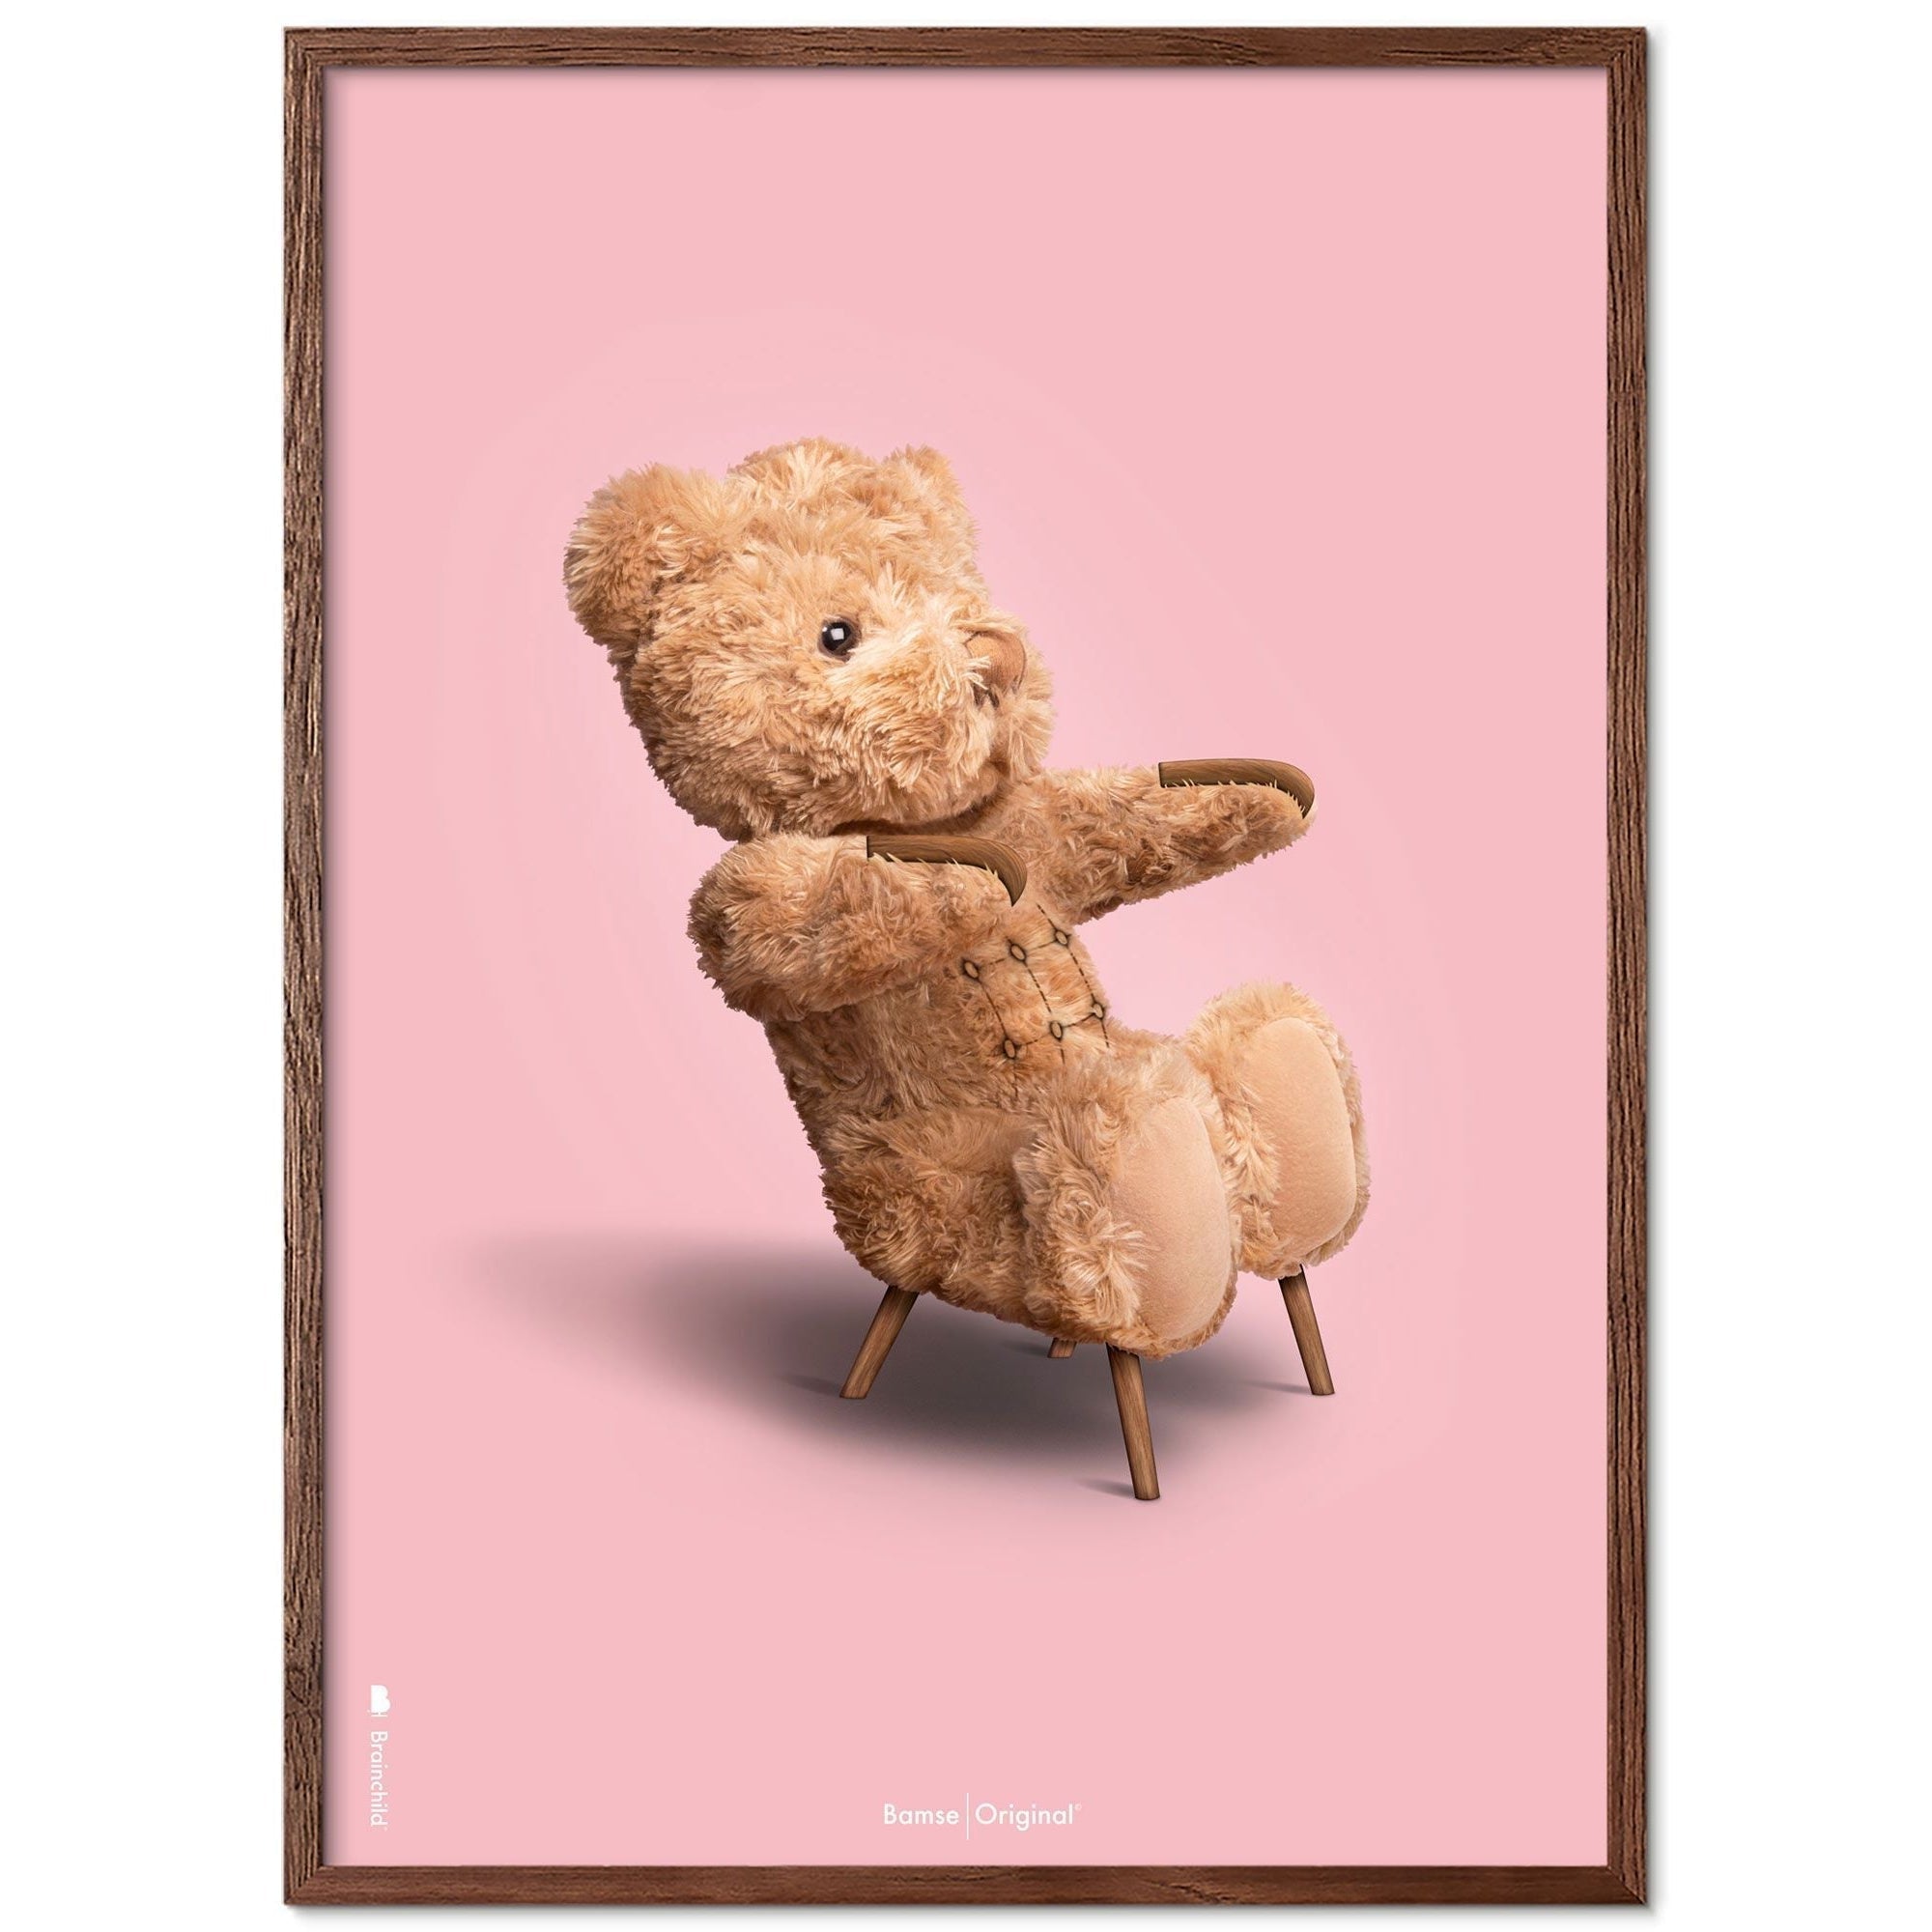 Brainchild Teddy Bear Classic Poster Frame lavet af Dark Wood Ram 70x100 cm, lyserød baggrund